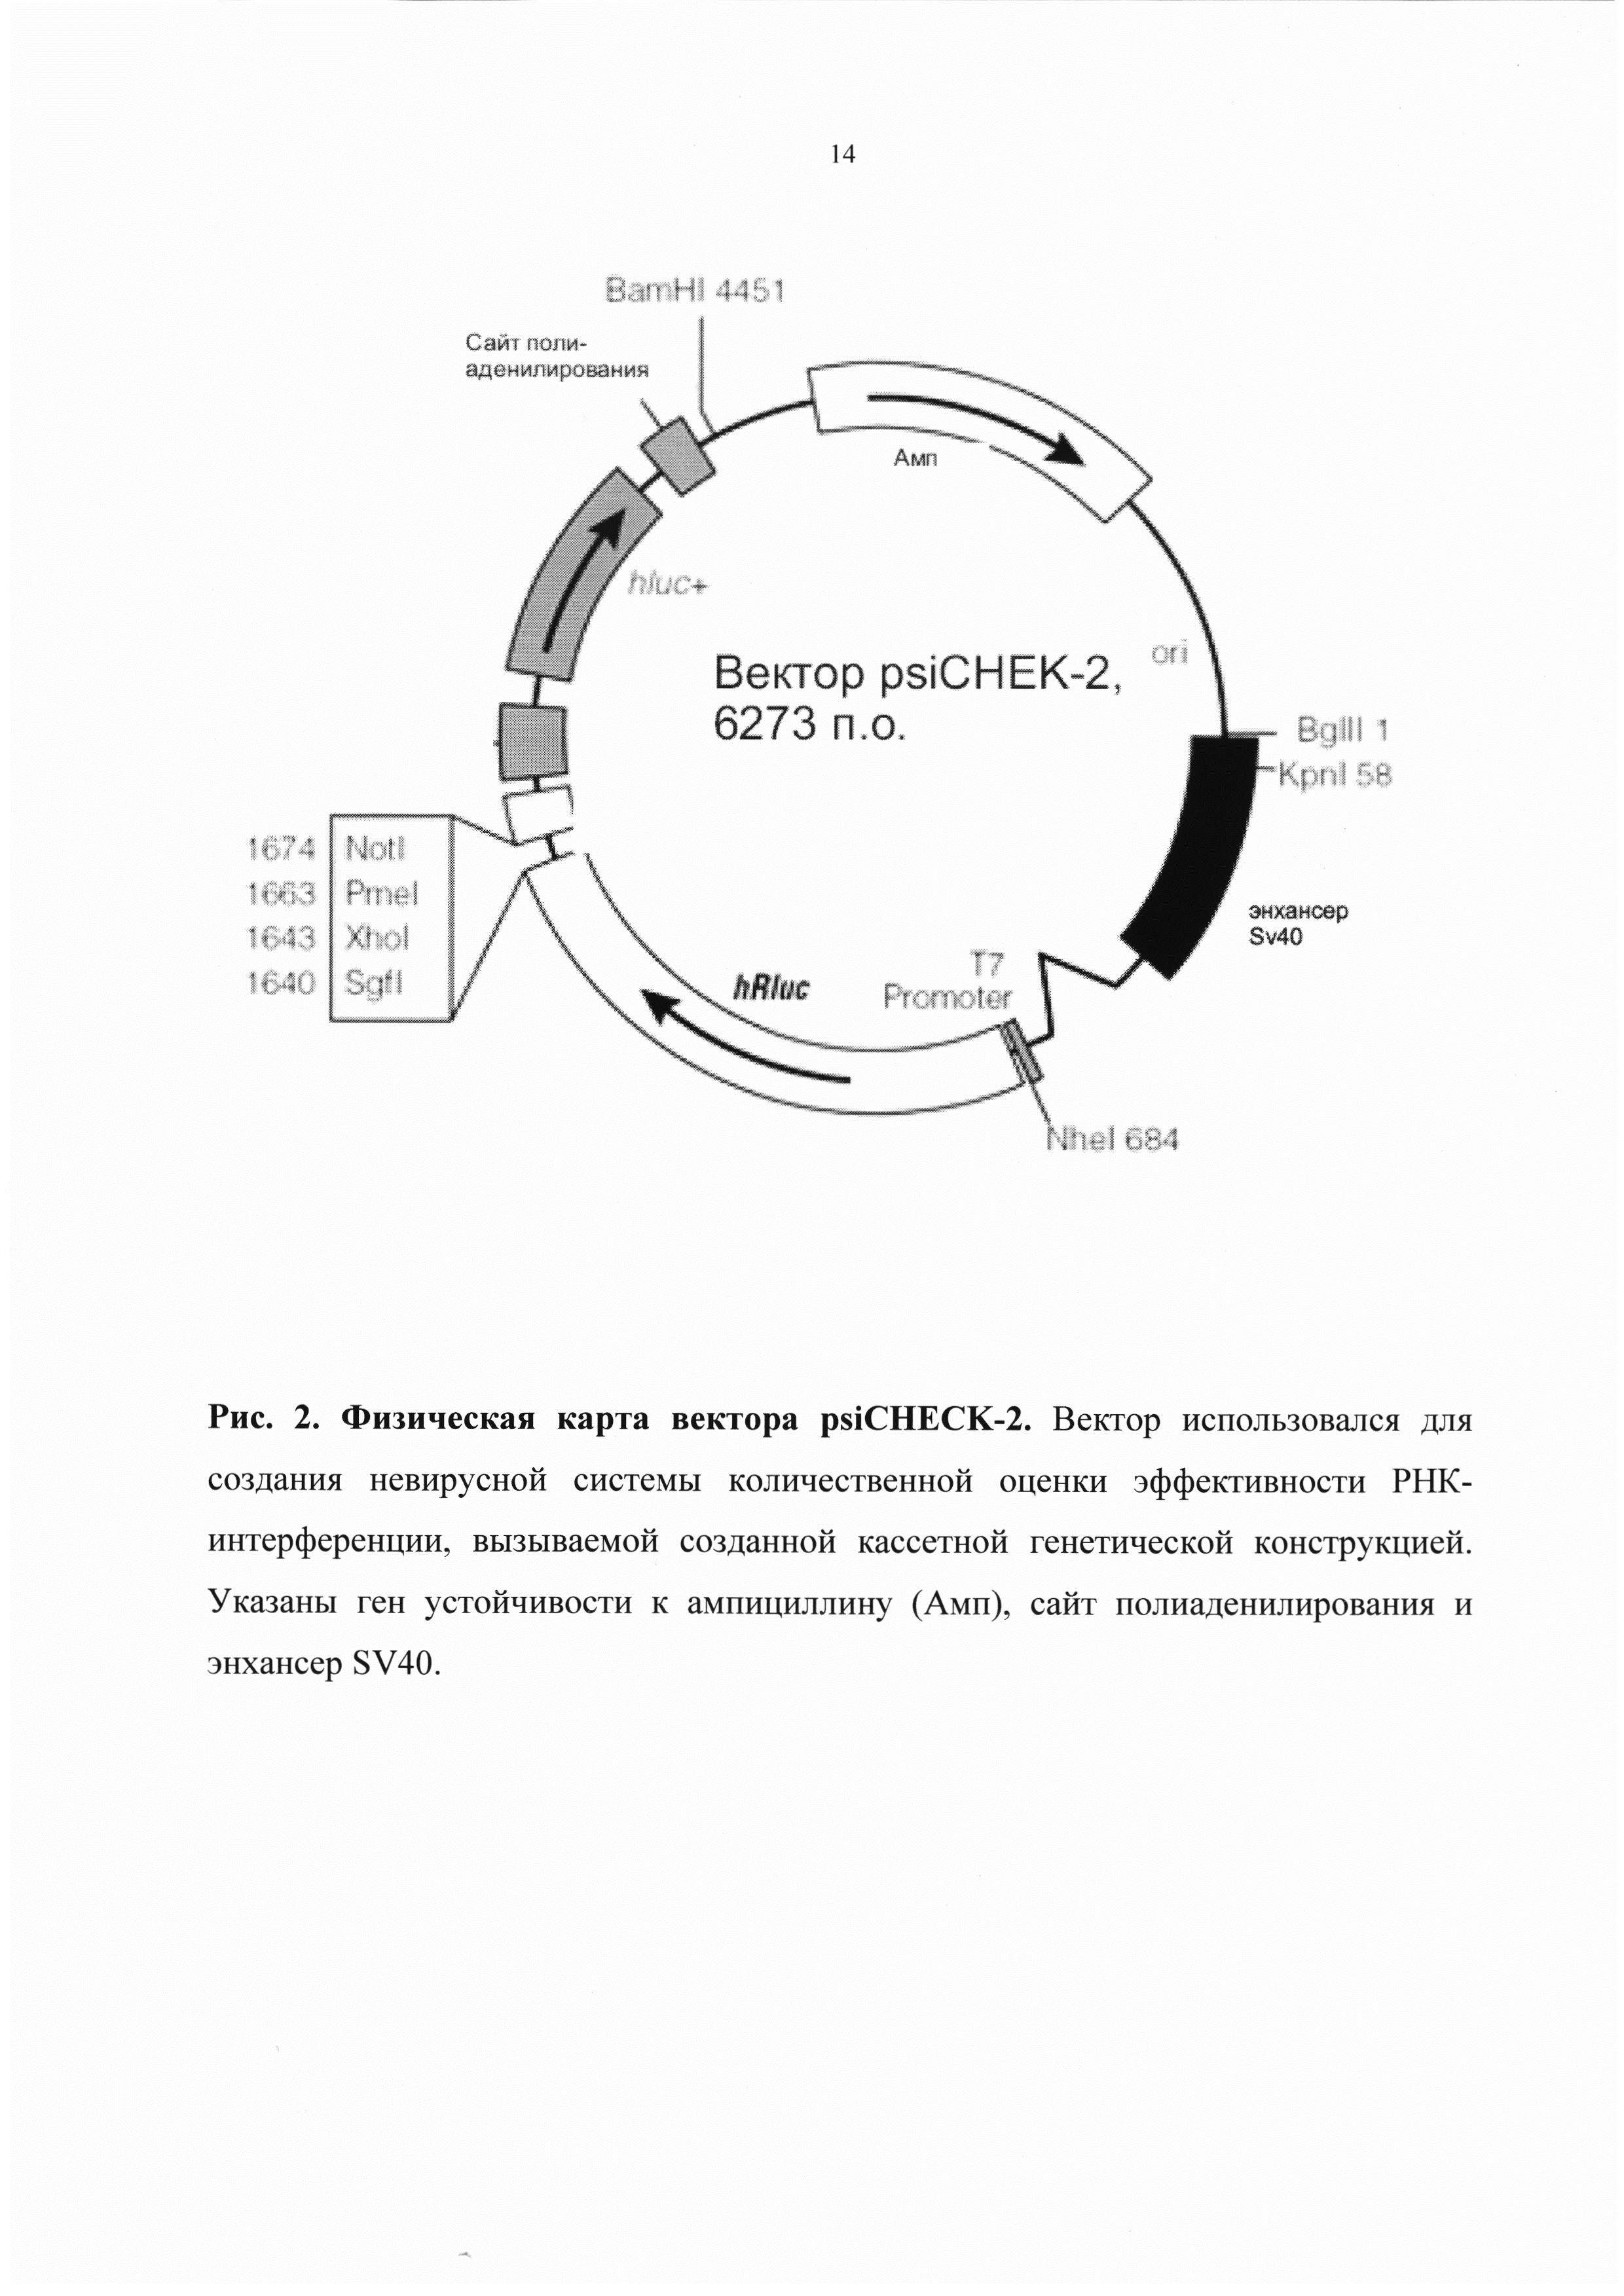 Кассетная генетическая конструкция, экспрессирующая две биологически активные siPHK, эффективно атакующие мишени в мРНК обратной транскриптазы ВИЧ-1 субтипа А у больных в России, и одну siPHK, направленную на мРНК гена CCR5